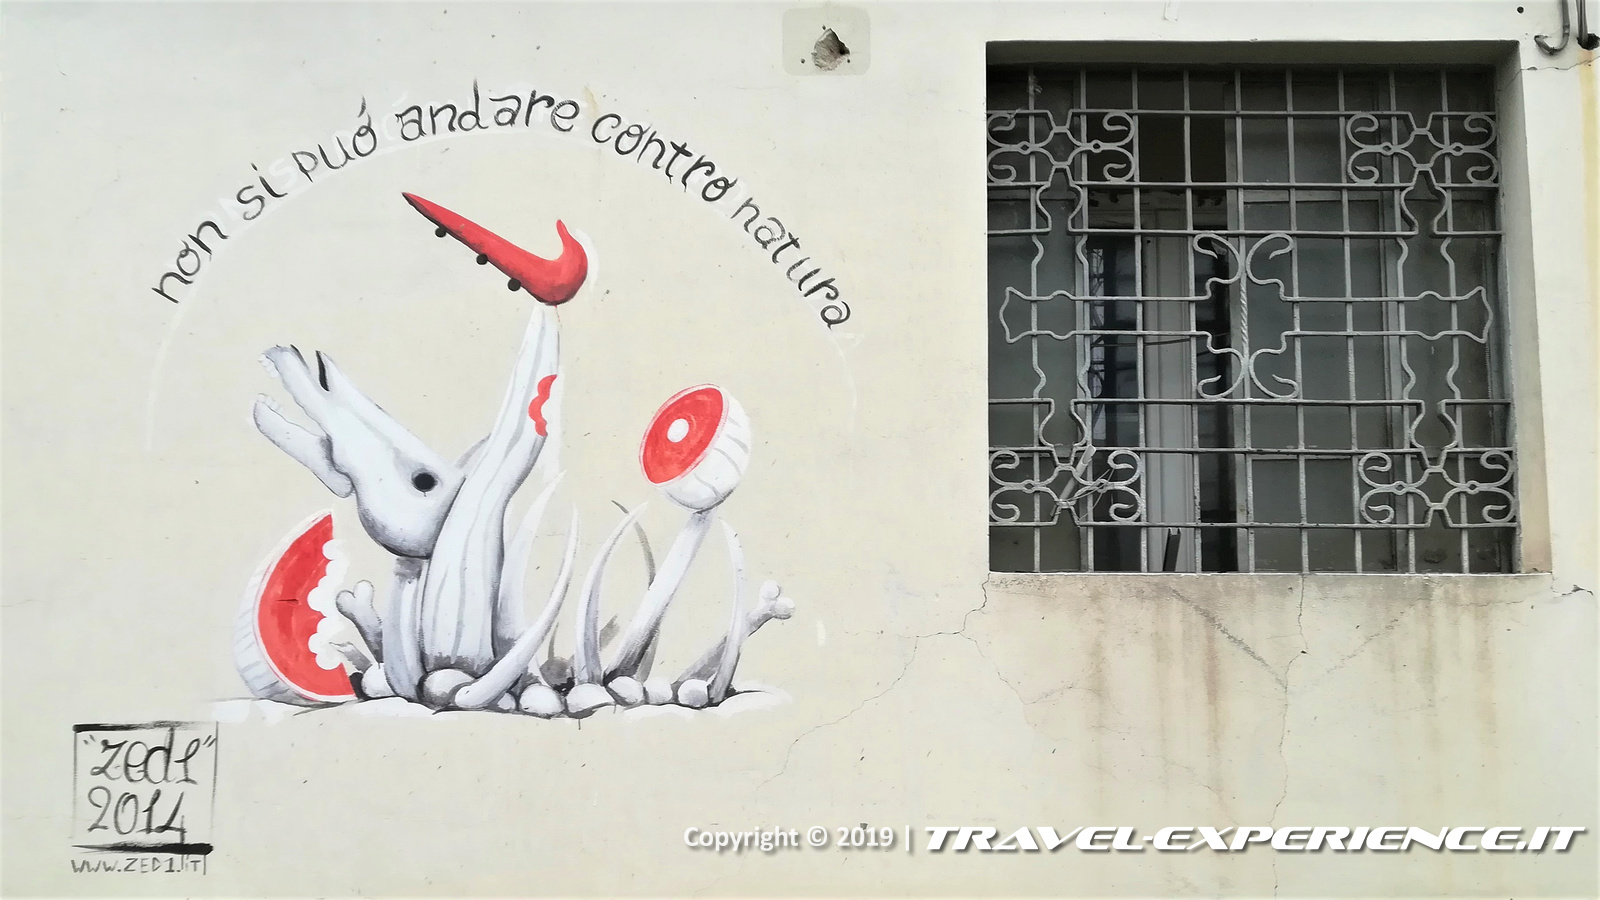 Zed1, Non si può andare contro natura, murales, strret art, Milano